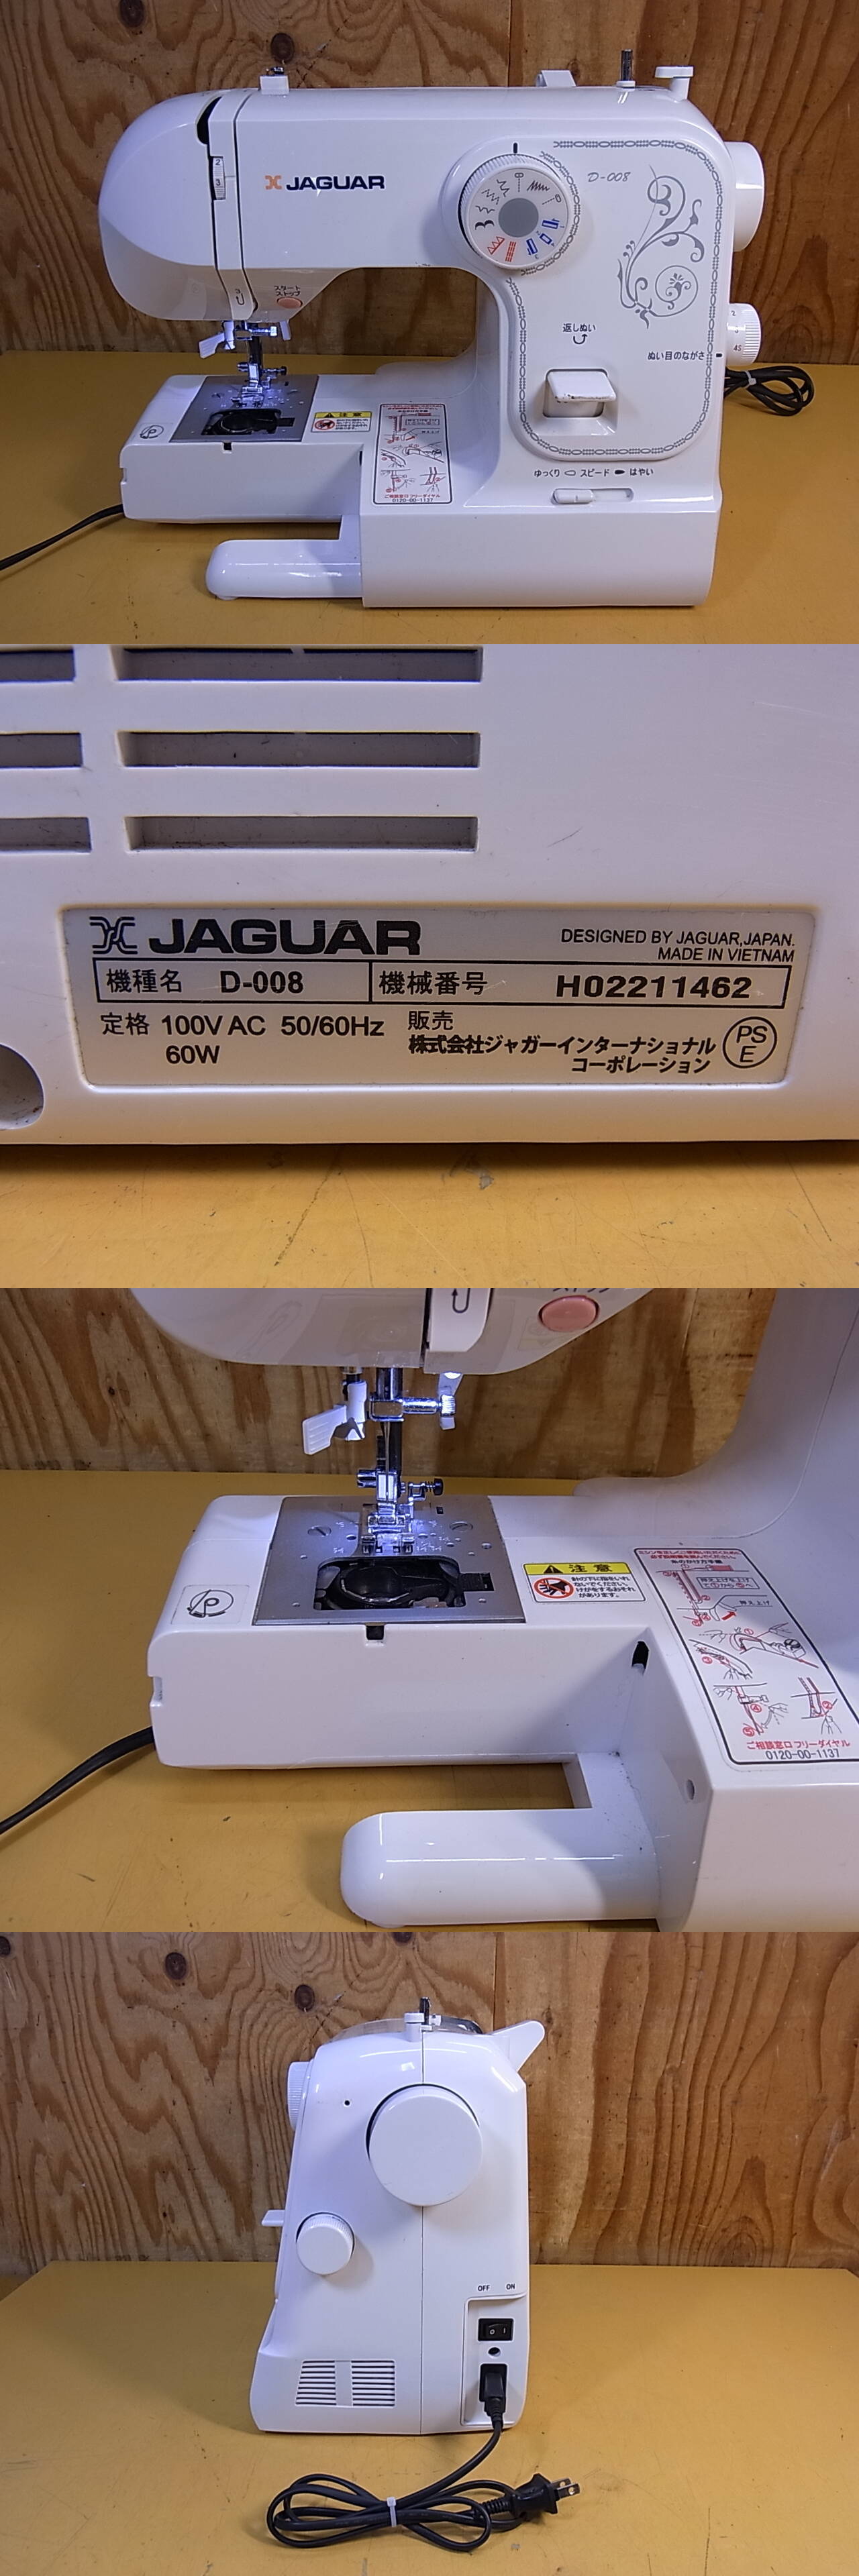 ジャガー コンピュータミシン JAGUAR - おもちゃ